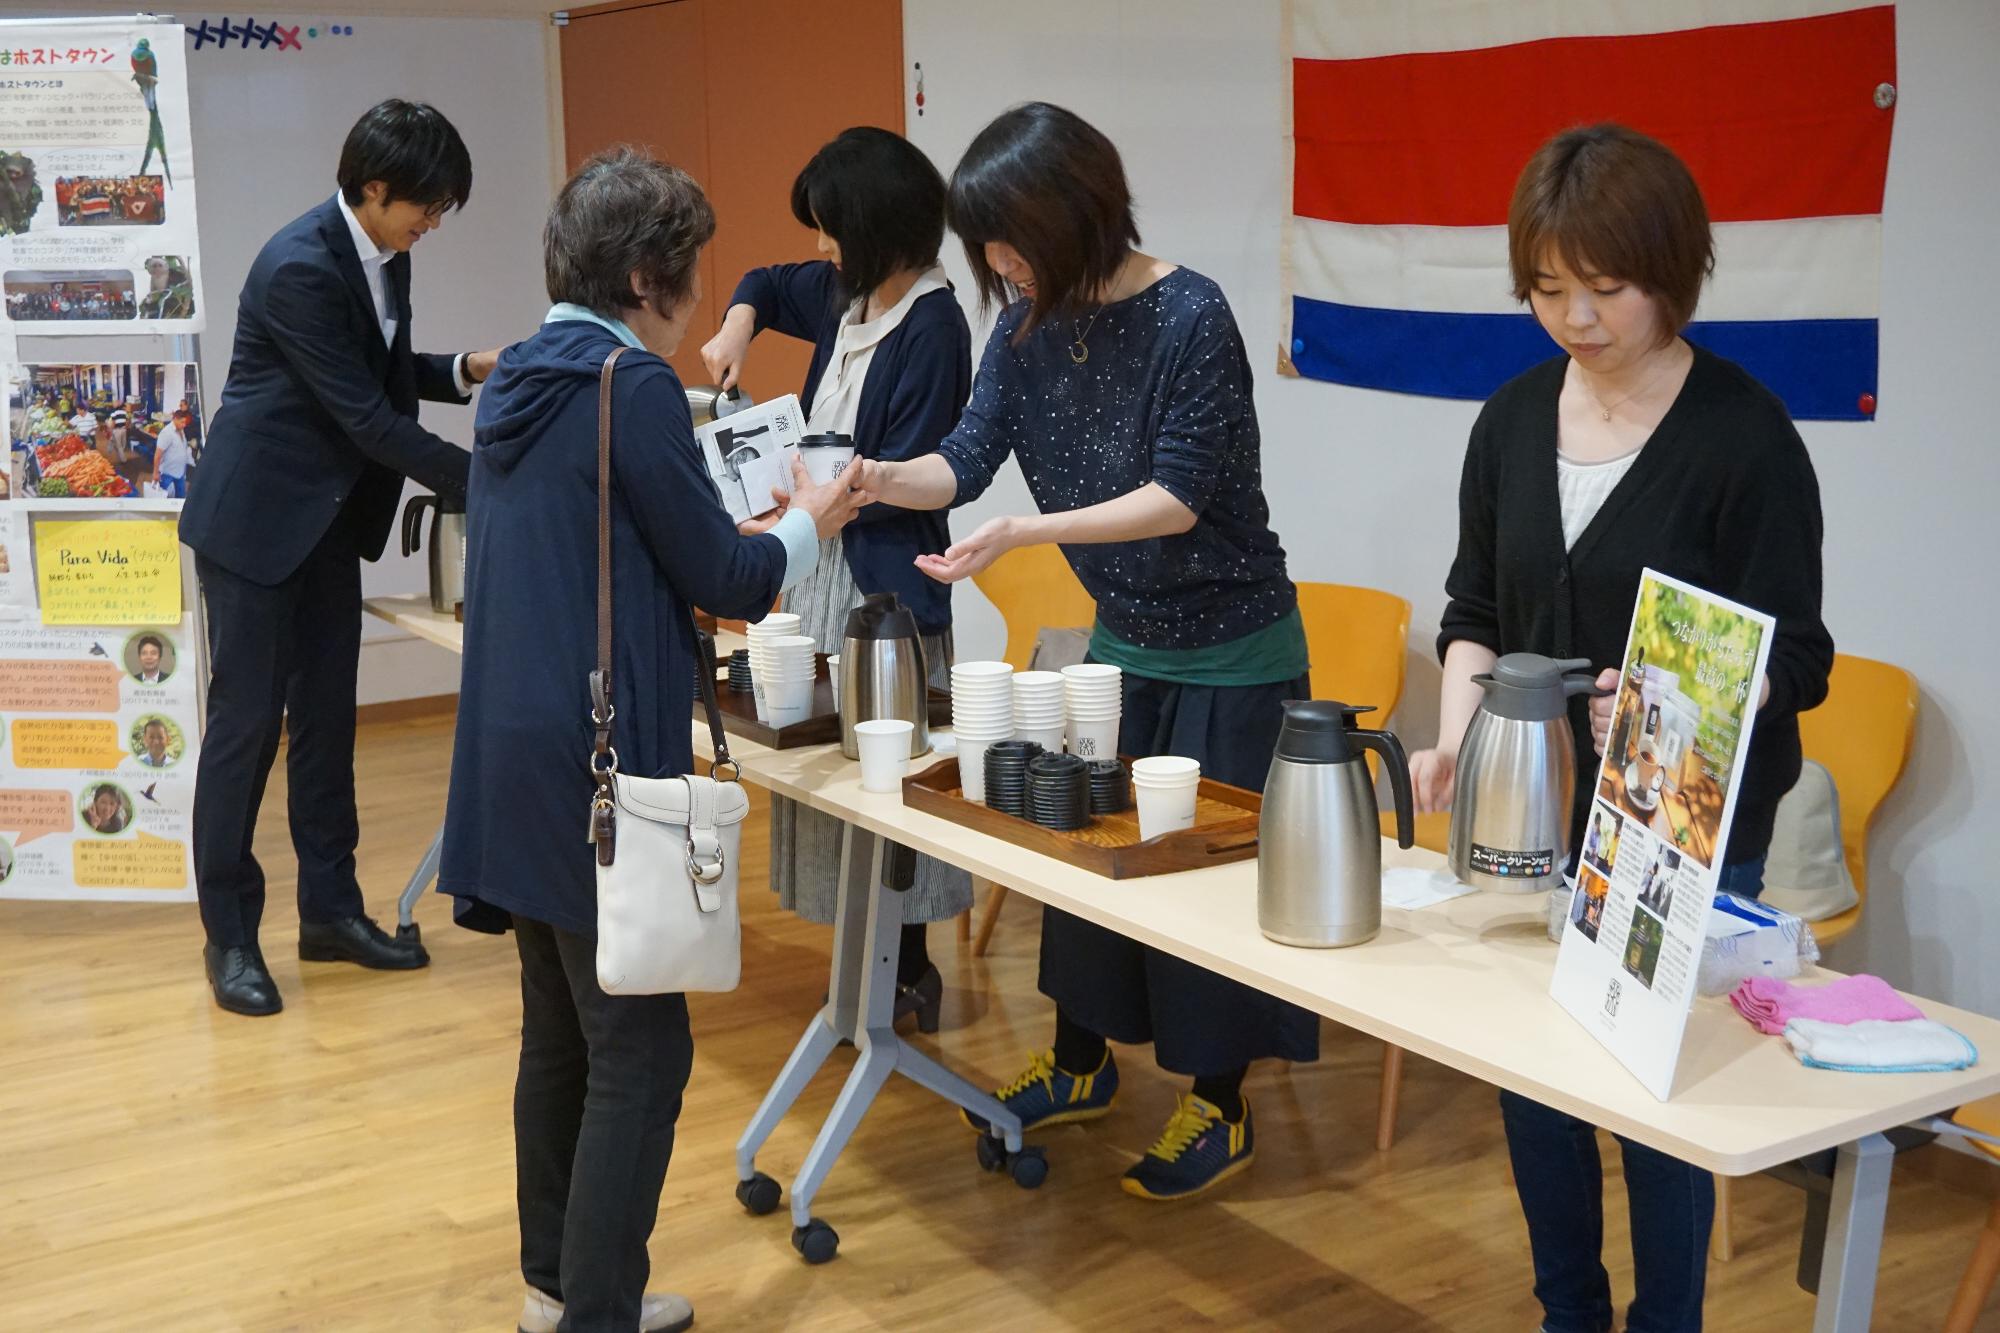 丸山珈琲のご協力でコスタリカコーヒーを提供